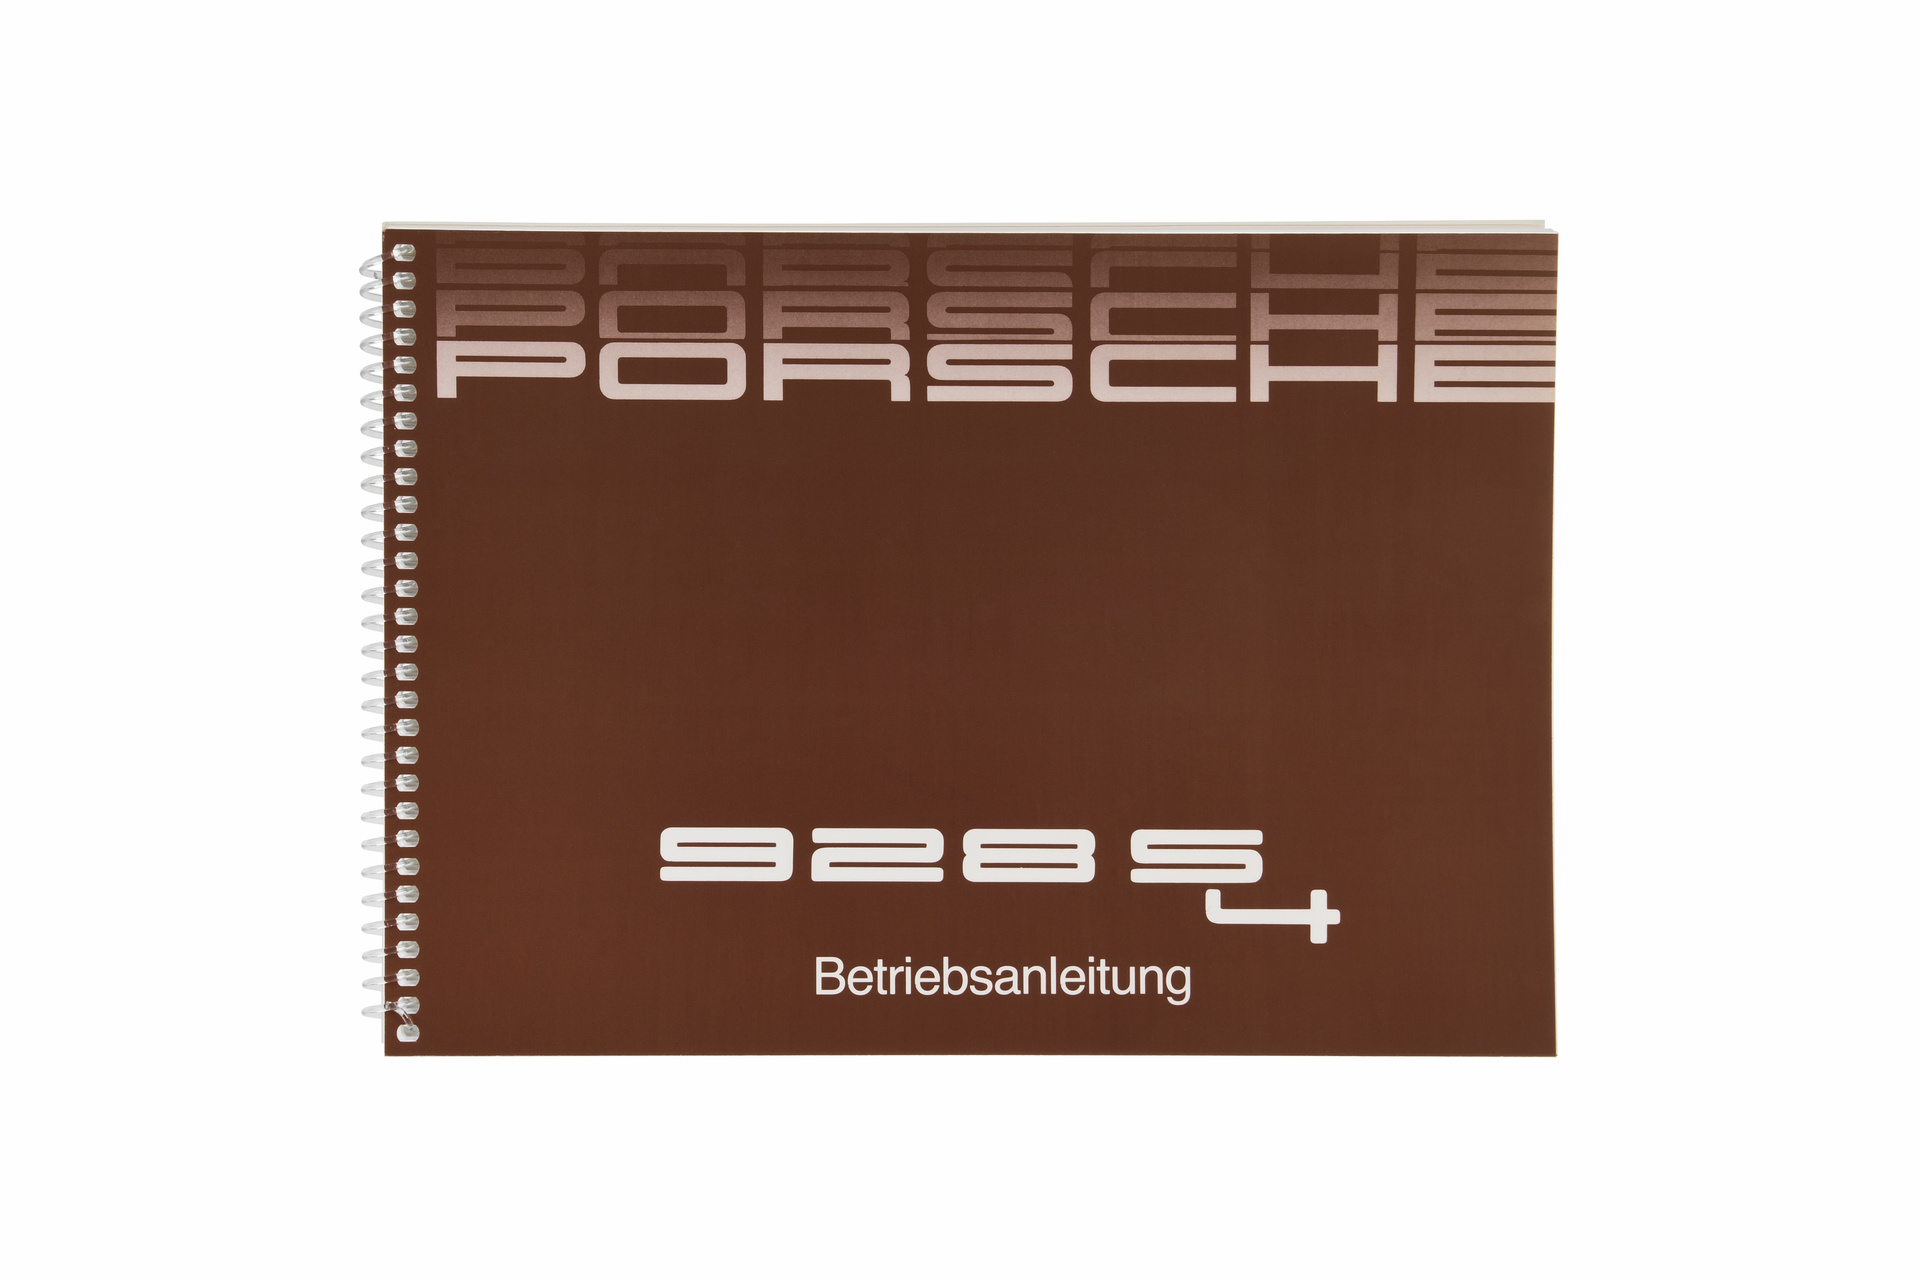 Porsche WKD92803088 - Instructions 928 s 4 - 88